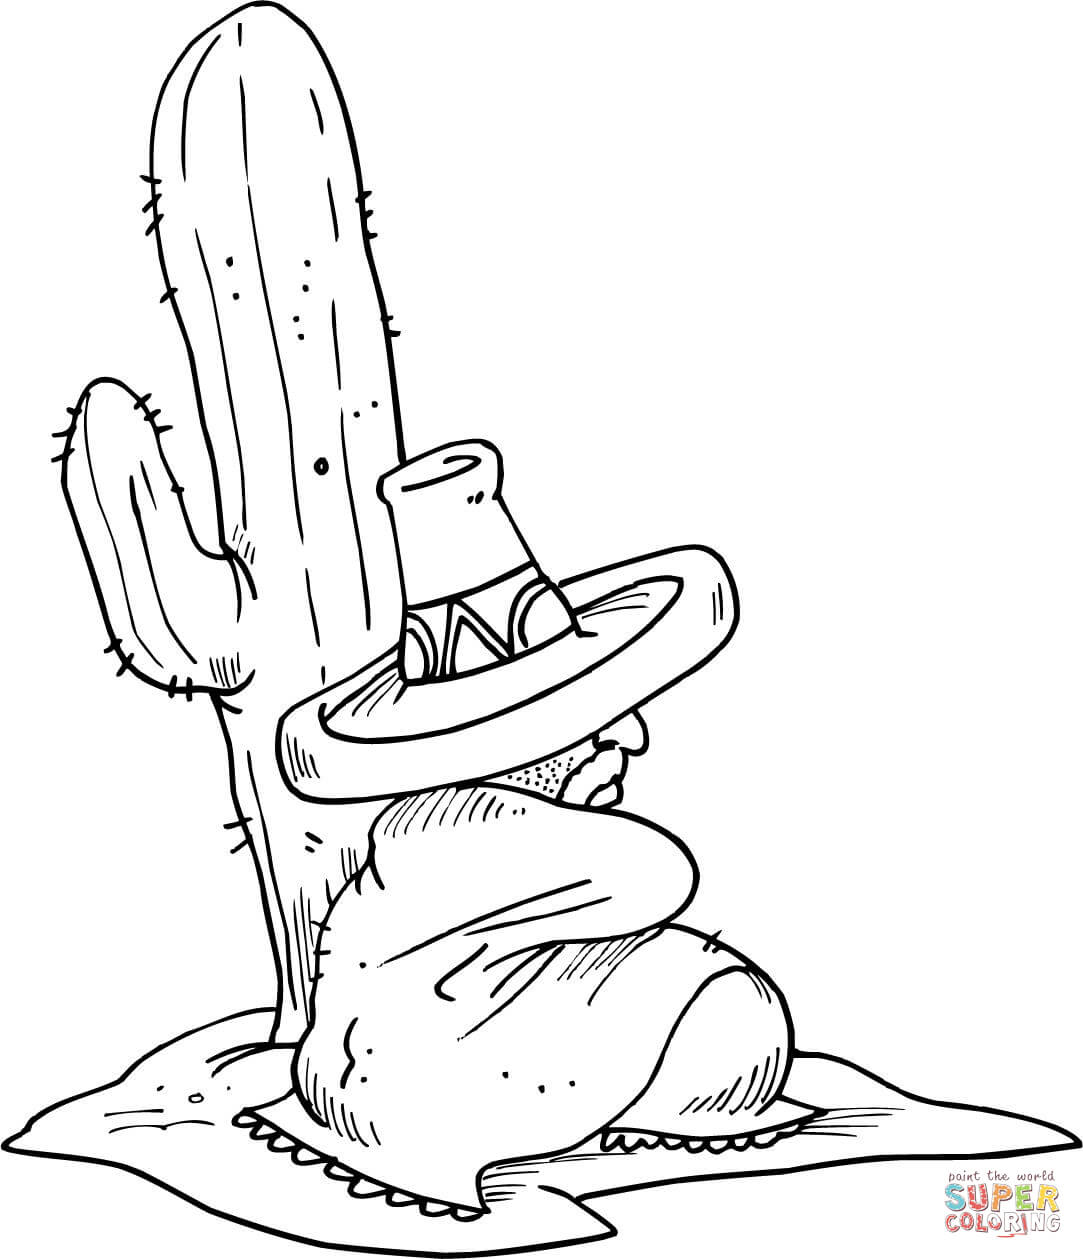 Coloriage - Mexicain Endormi À Côté D'Un Cactus intérieur Coloriage Cactus A Imprimer